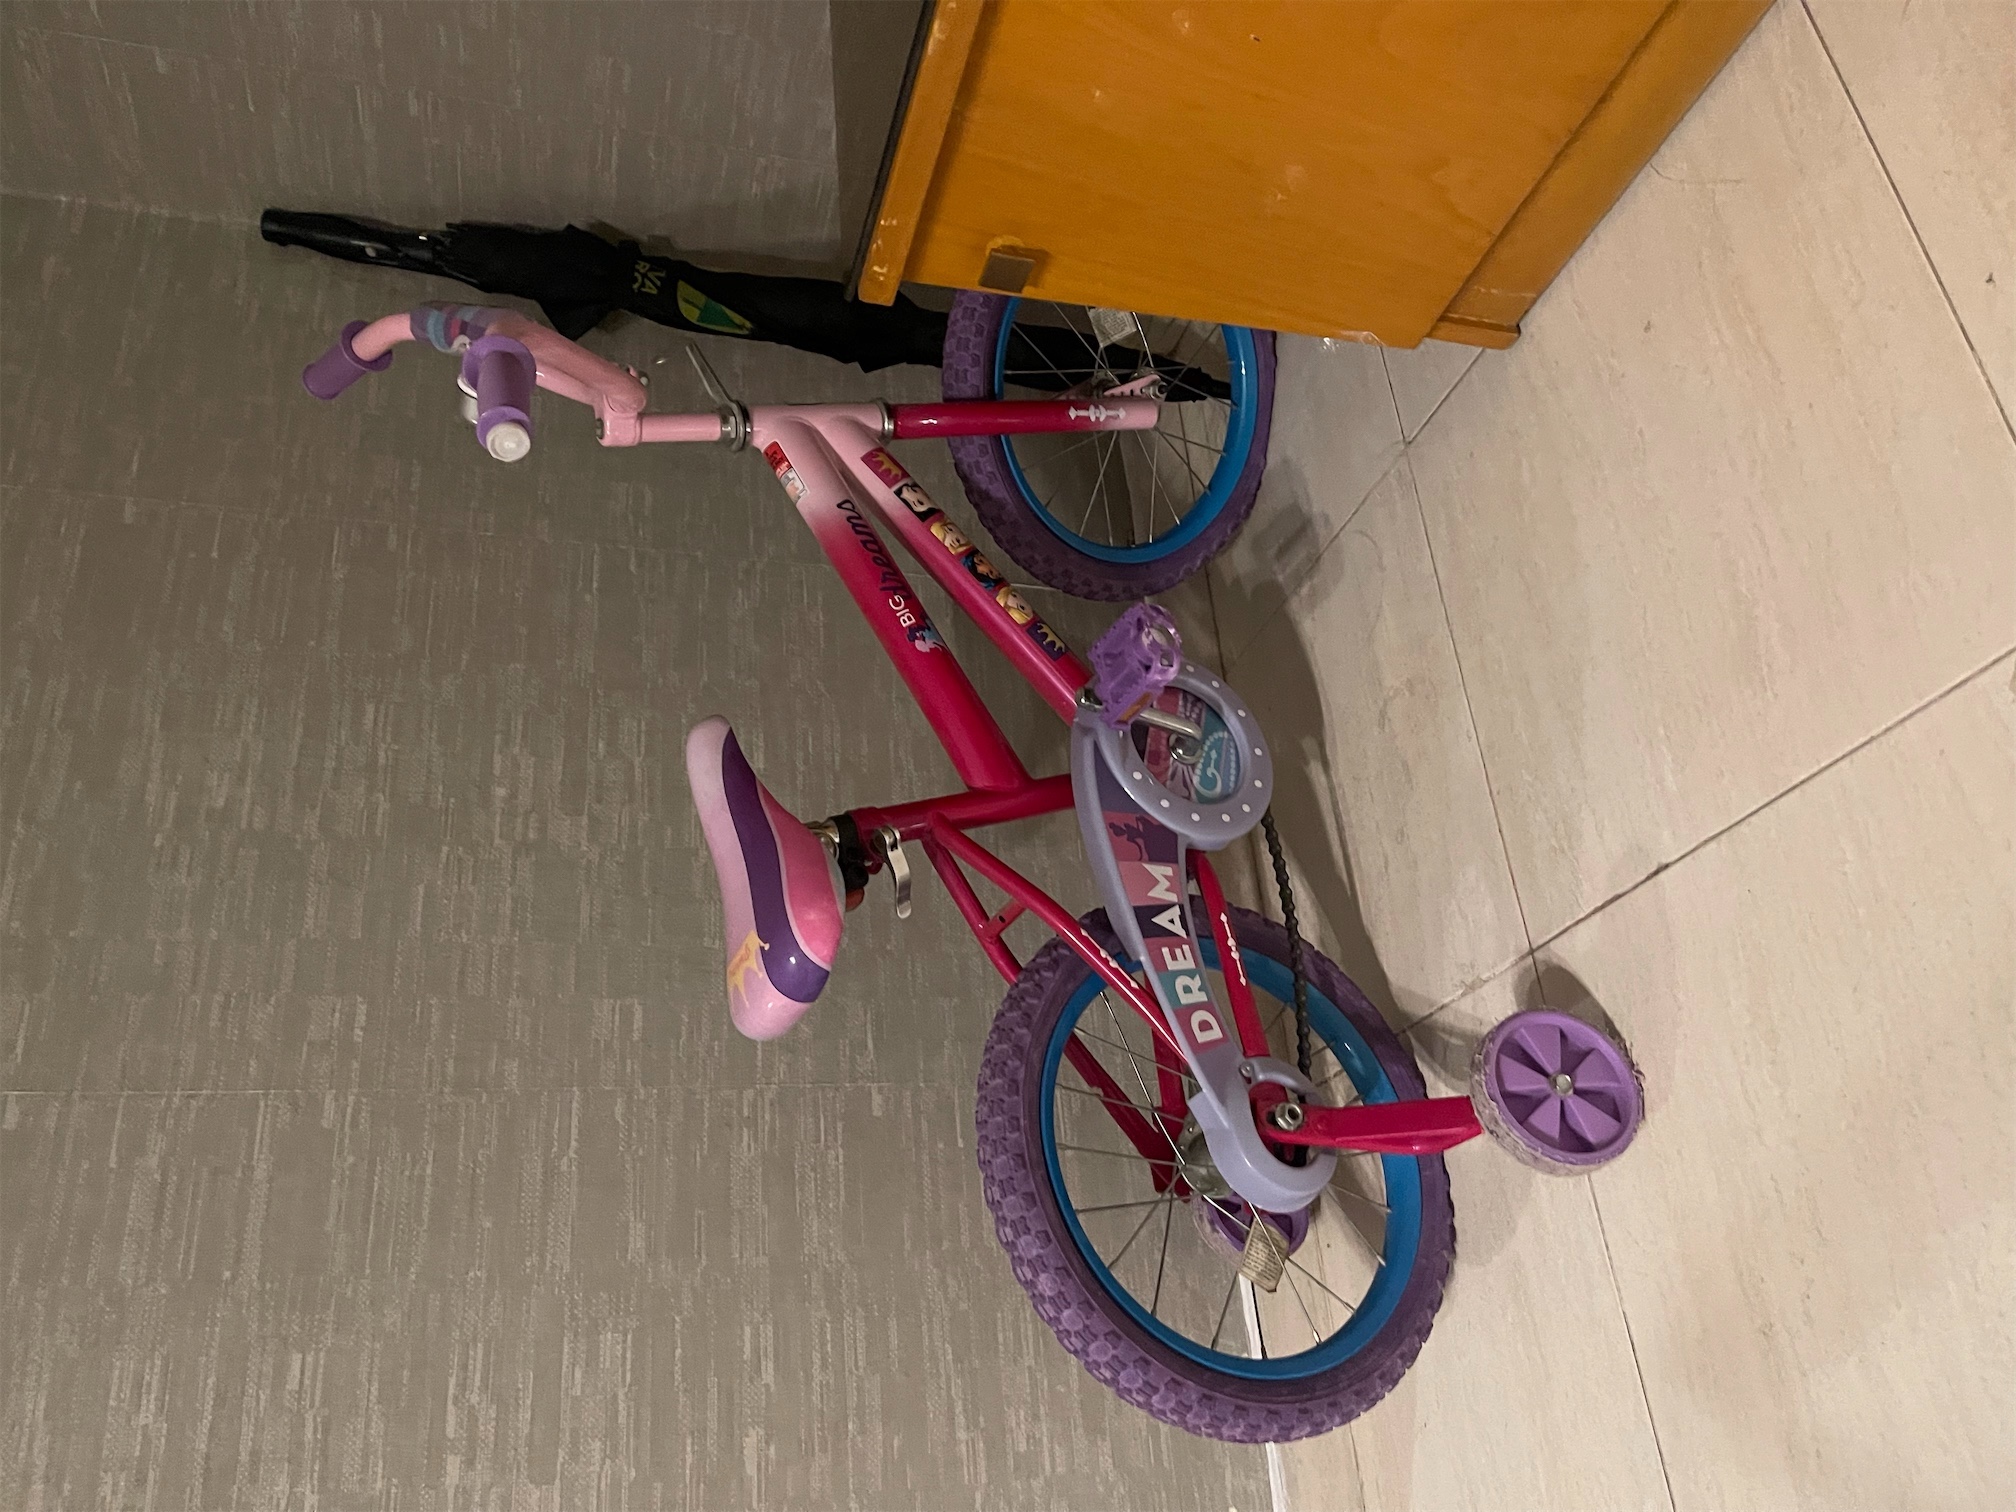 juguetes - Bicicleta 